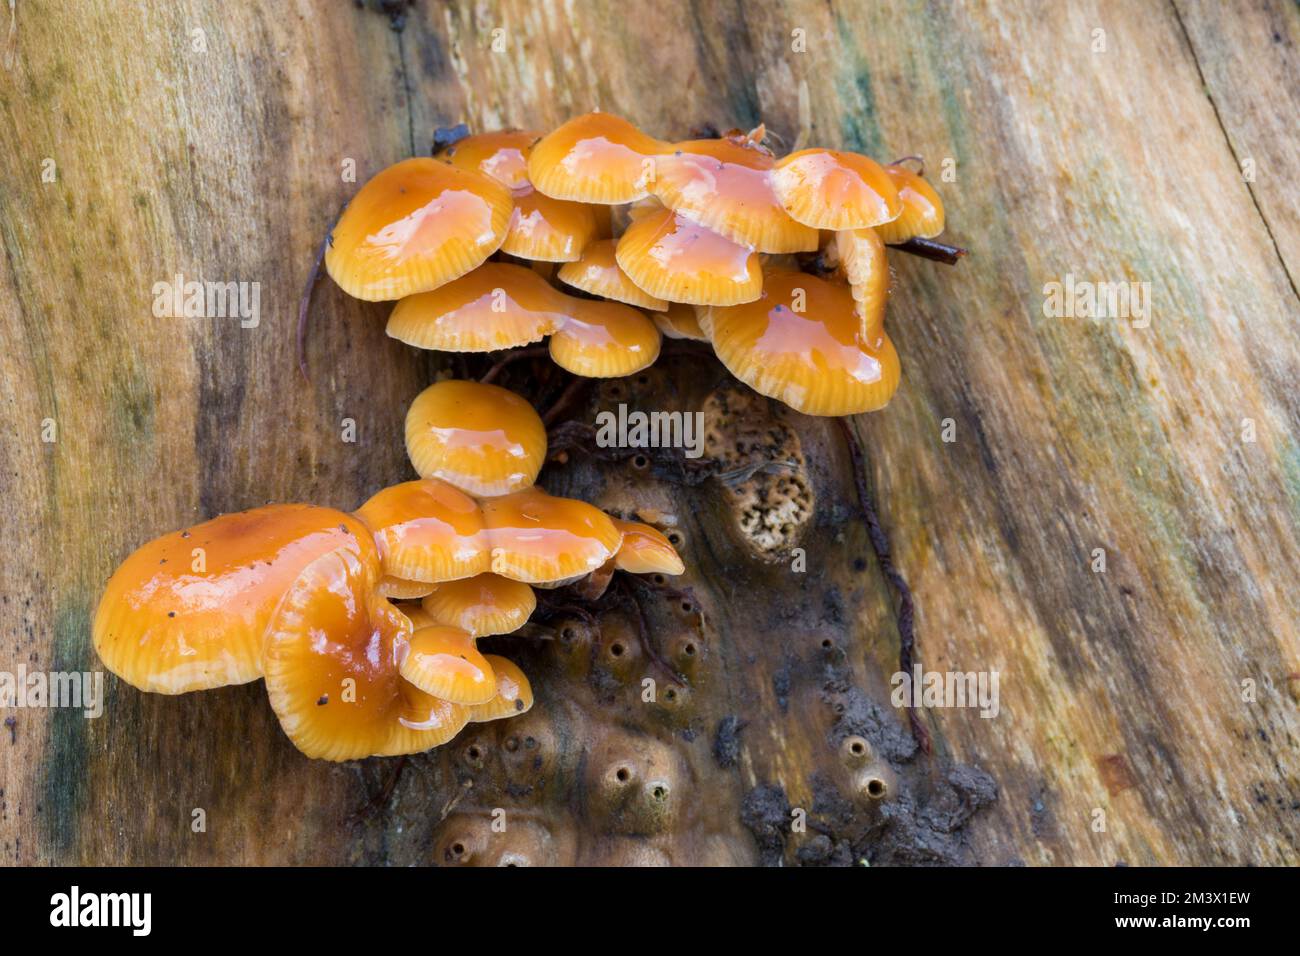 Corps de fructification du champignon de la tige de velours (Flammulina velutipes) sur une souche d'un sage (Sambucus nigra). Powys, pays de Galles. Février. Banque D'Images